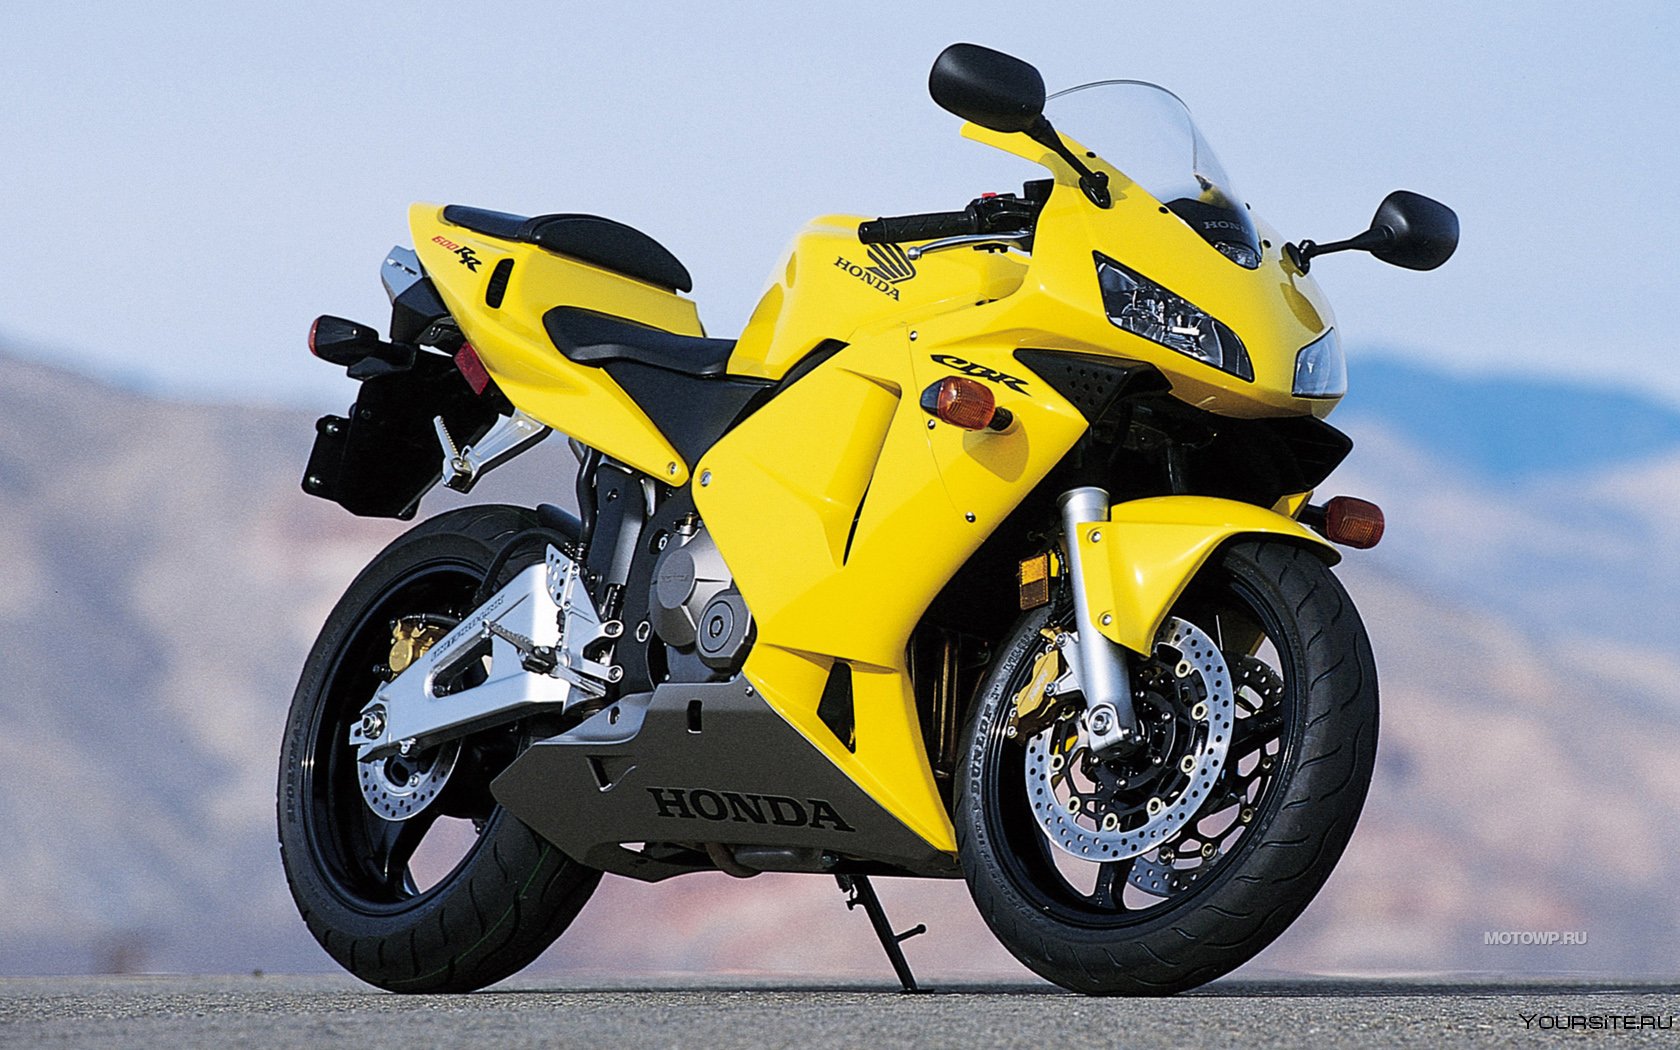 Покажи картинки мотоцикла. Спортивный мотоцикл Honda cbr600rr. Honda CBR 800.